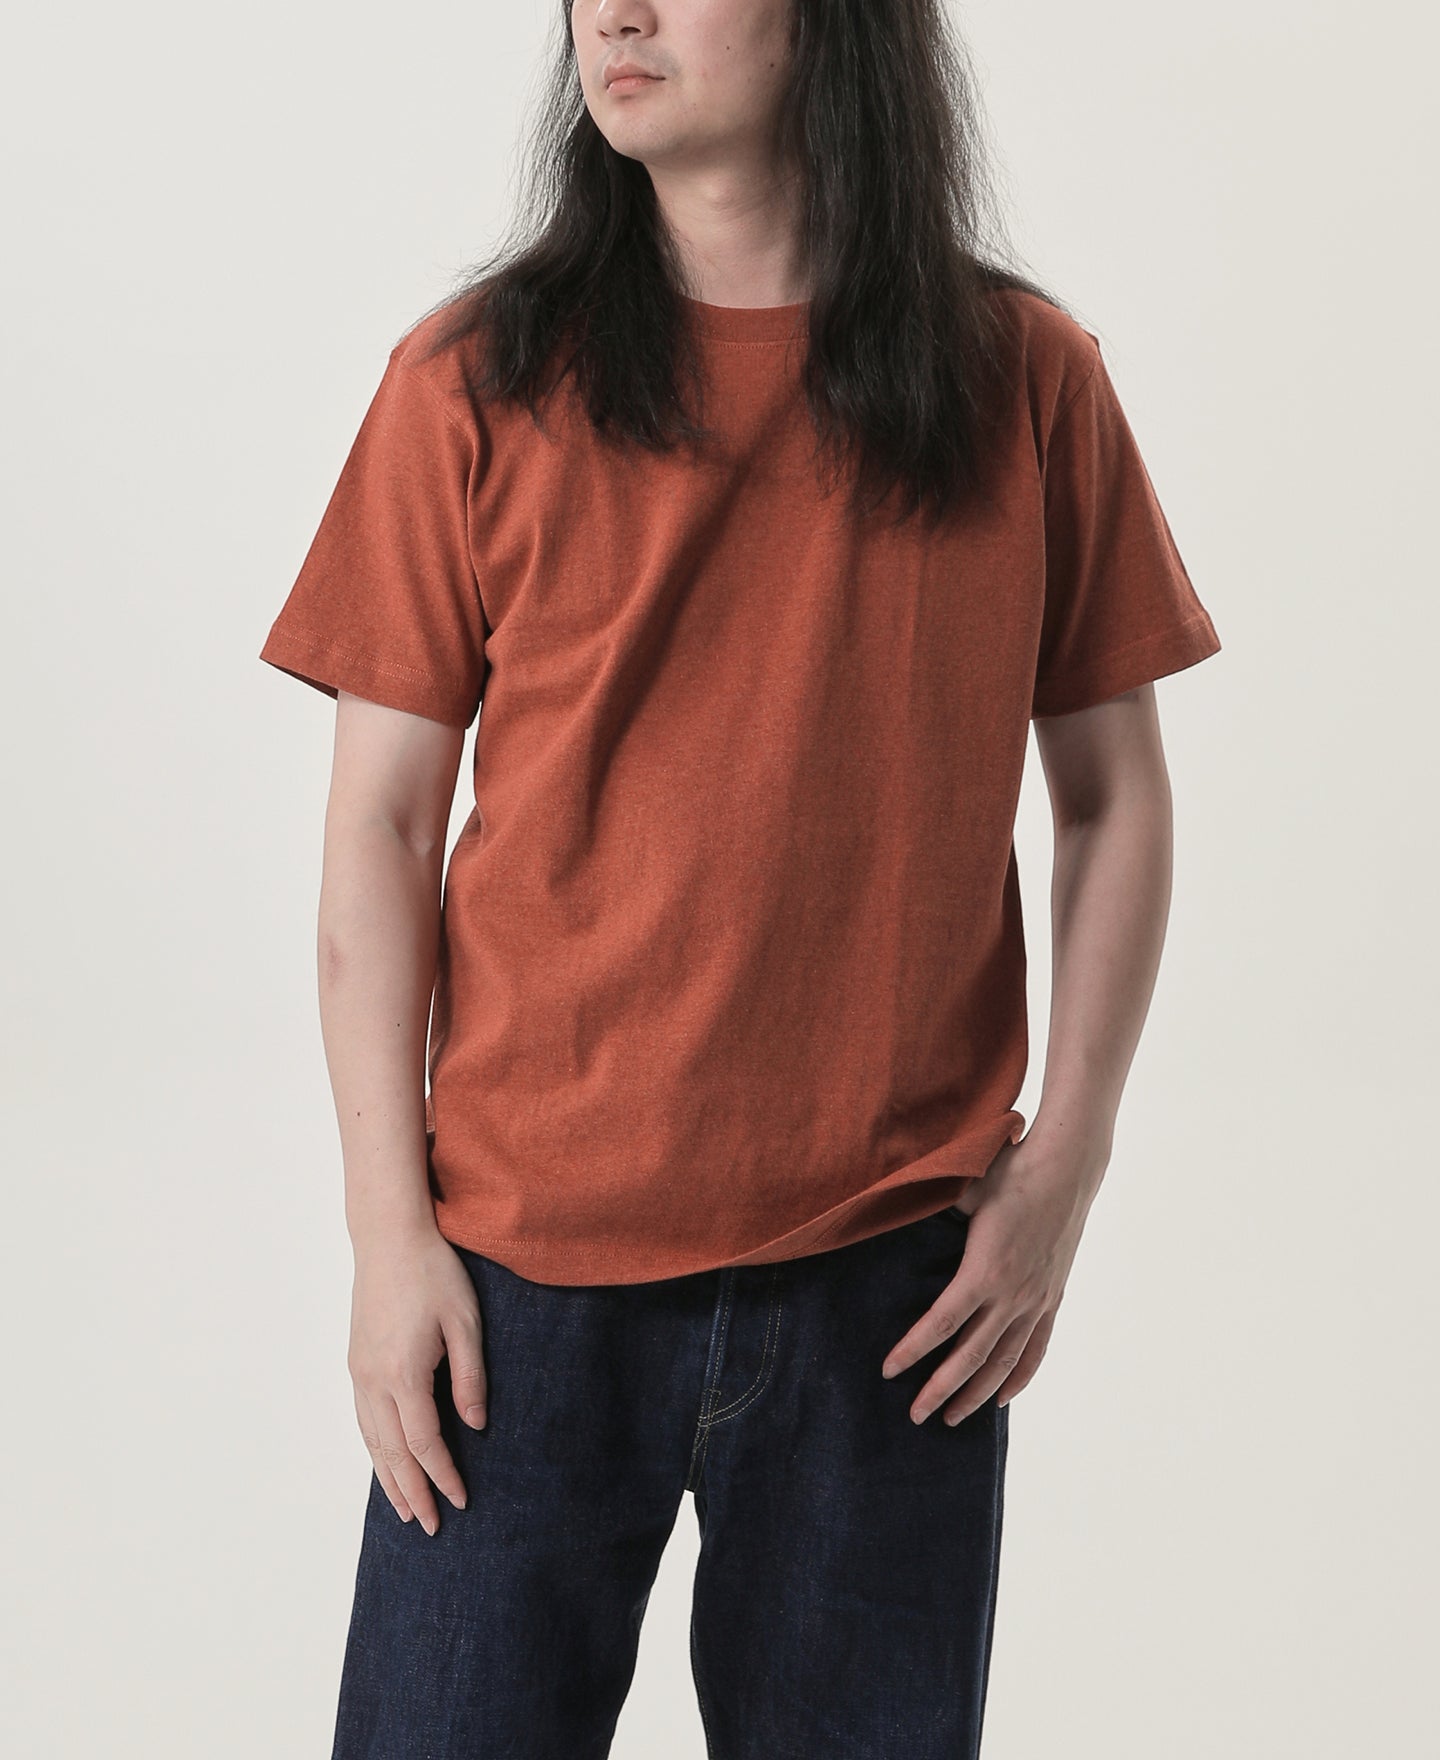 9 oz US Cotton Ring-spun Tubular T-Shirt - Orange Red | Tube Tee